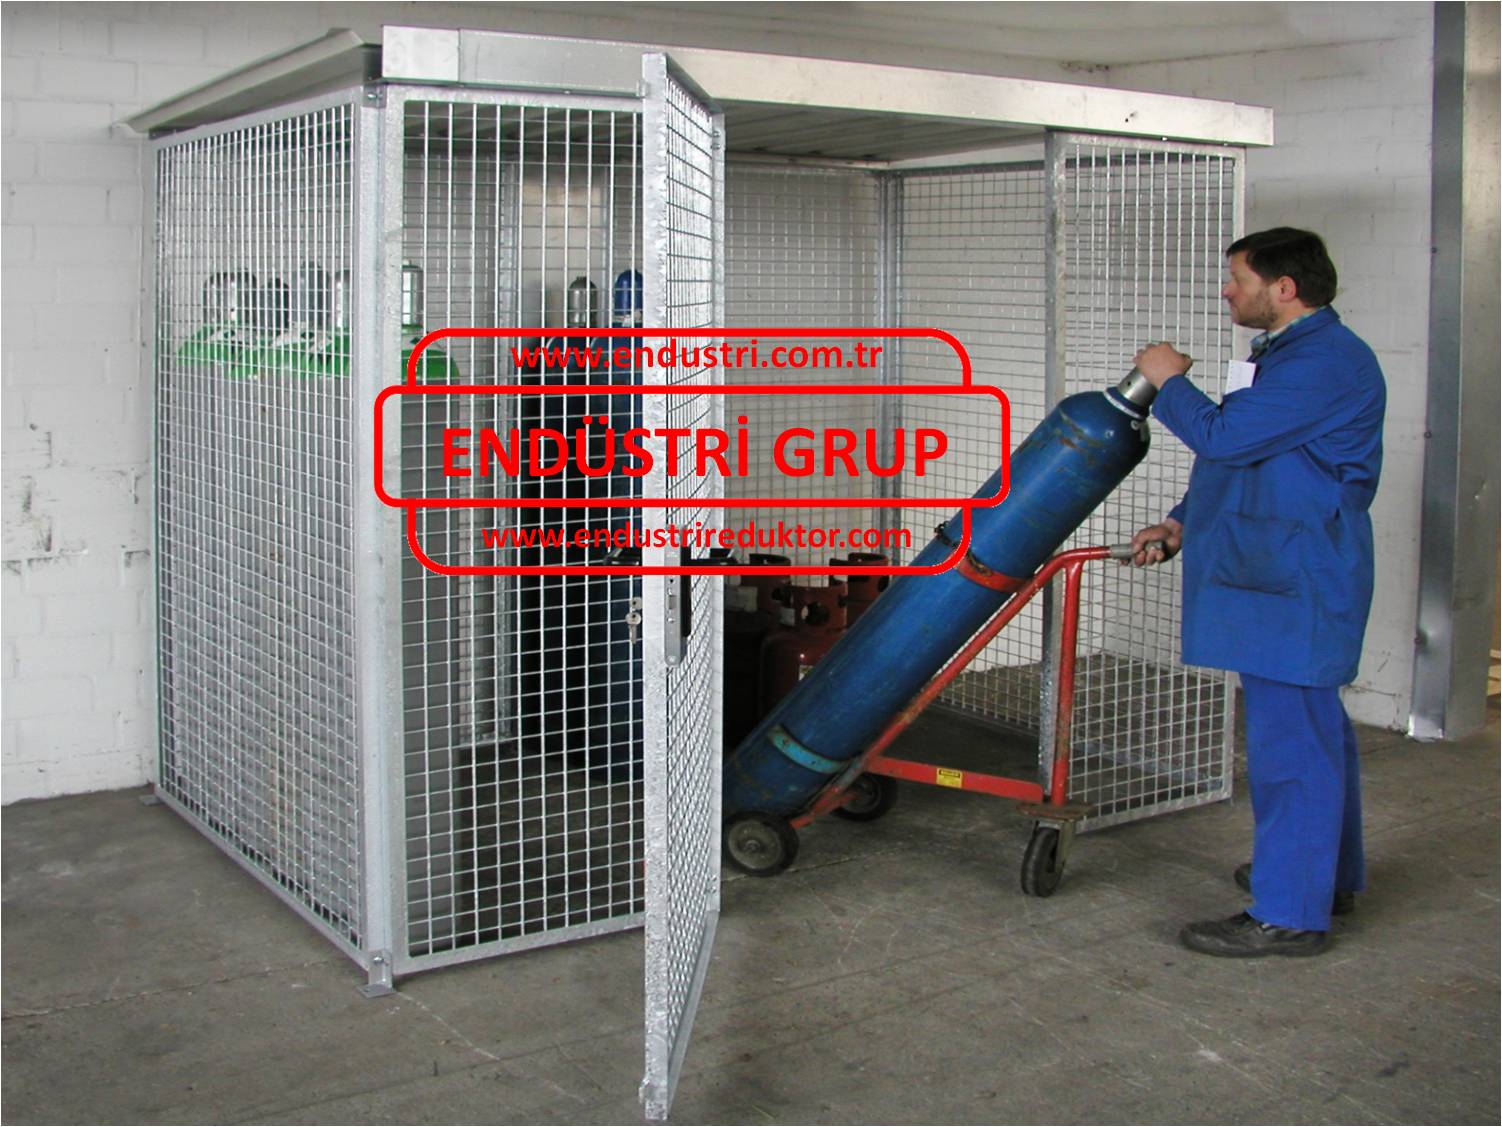 basincli-tup-gaz-aeresol-oksijen-azot-propan-depolama-stoklama-alani-deposu-dolabi-sistemi-kasasi-odasi-kabini